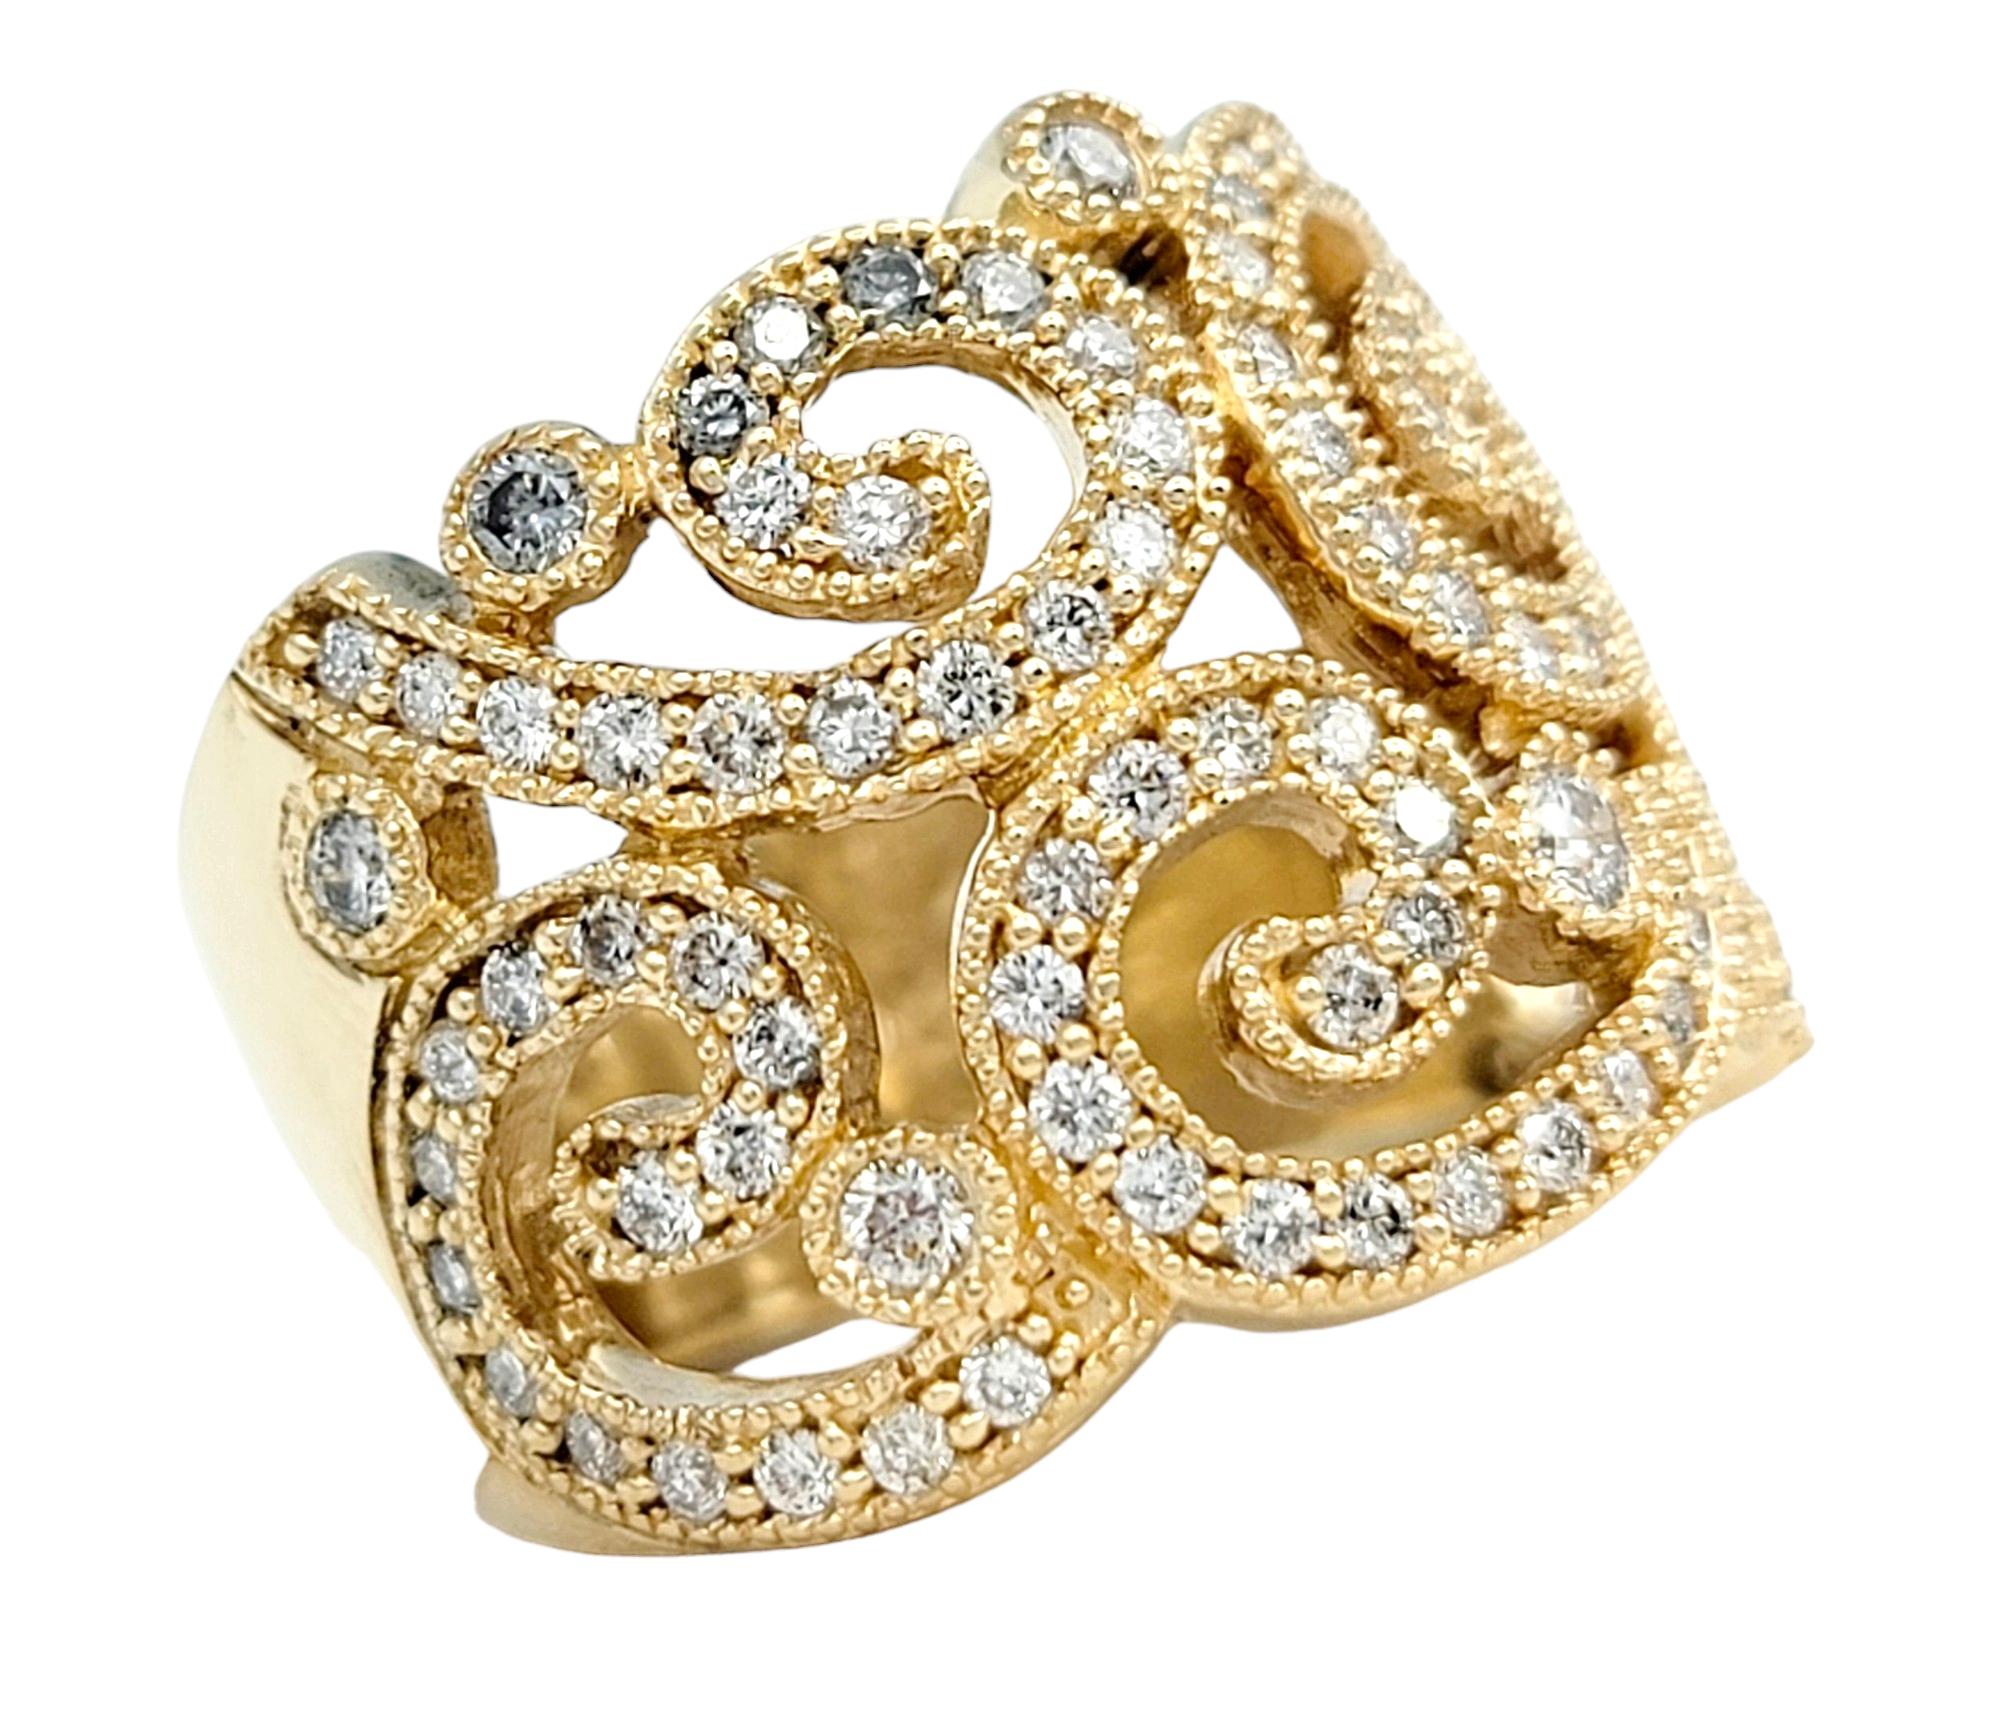 Taille de l'anneau : 6.5

Cette élégante bague à anneau Effy, sertie dans un luxueux or jaune 14 carats, est une pièce époustouflante qui allie harmonieusement art et sophistication. La bague présente une découpe en forme de volute ornée de